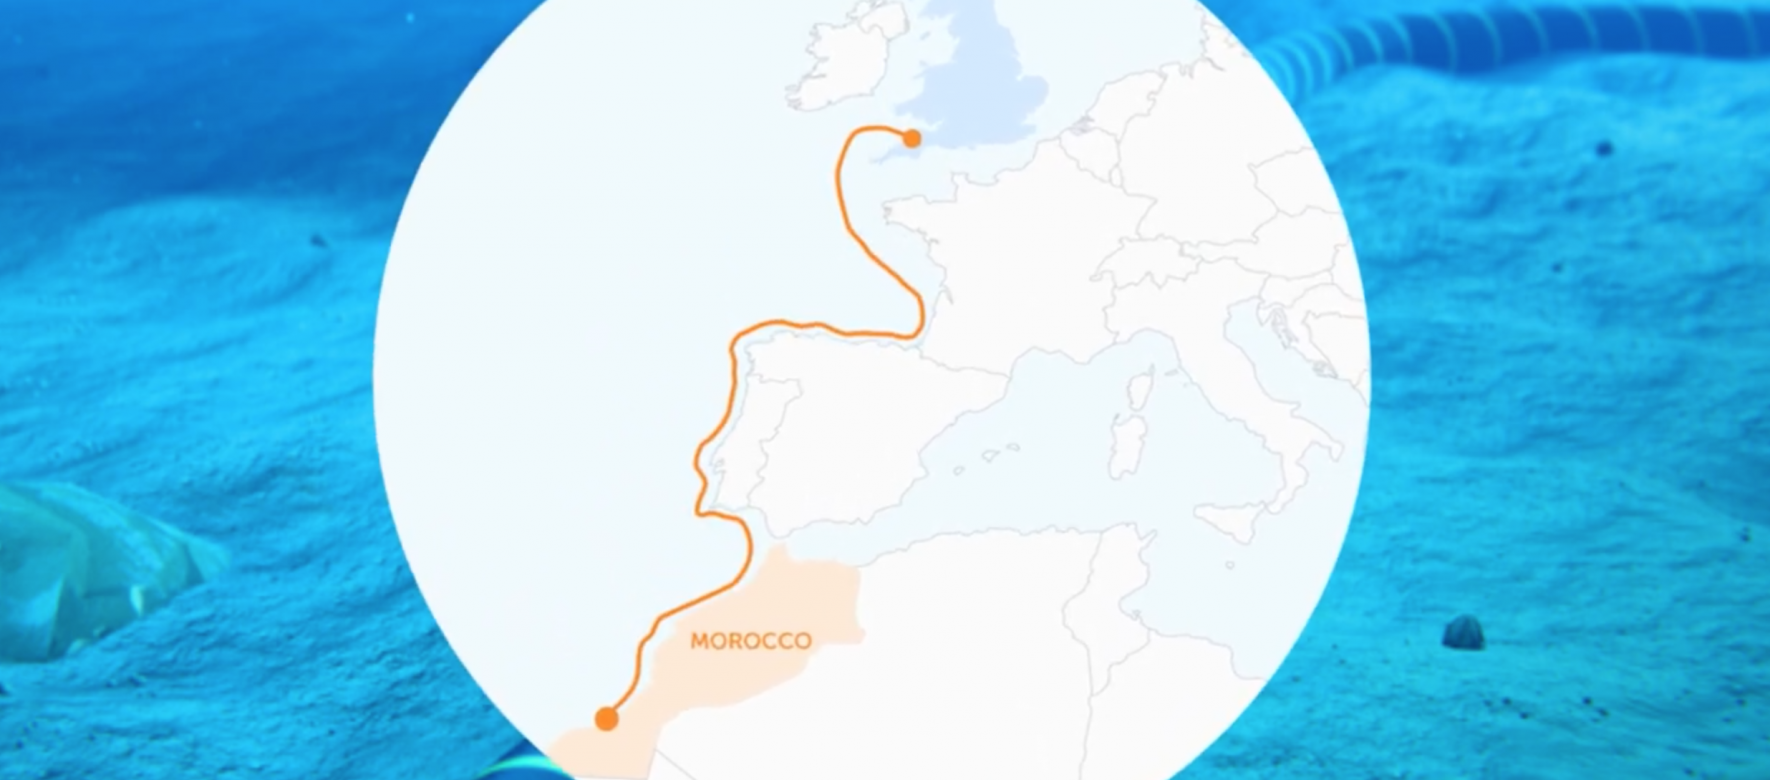 Le Maroc grâce à un câble sous-marin devrait fournir de l’électricité au Royaume-Uni dès 2027 1